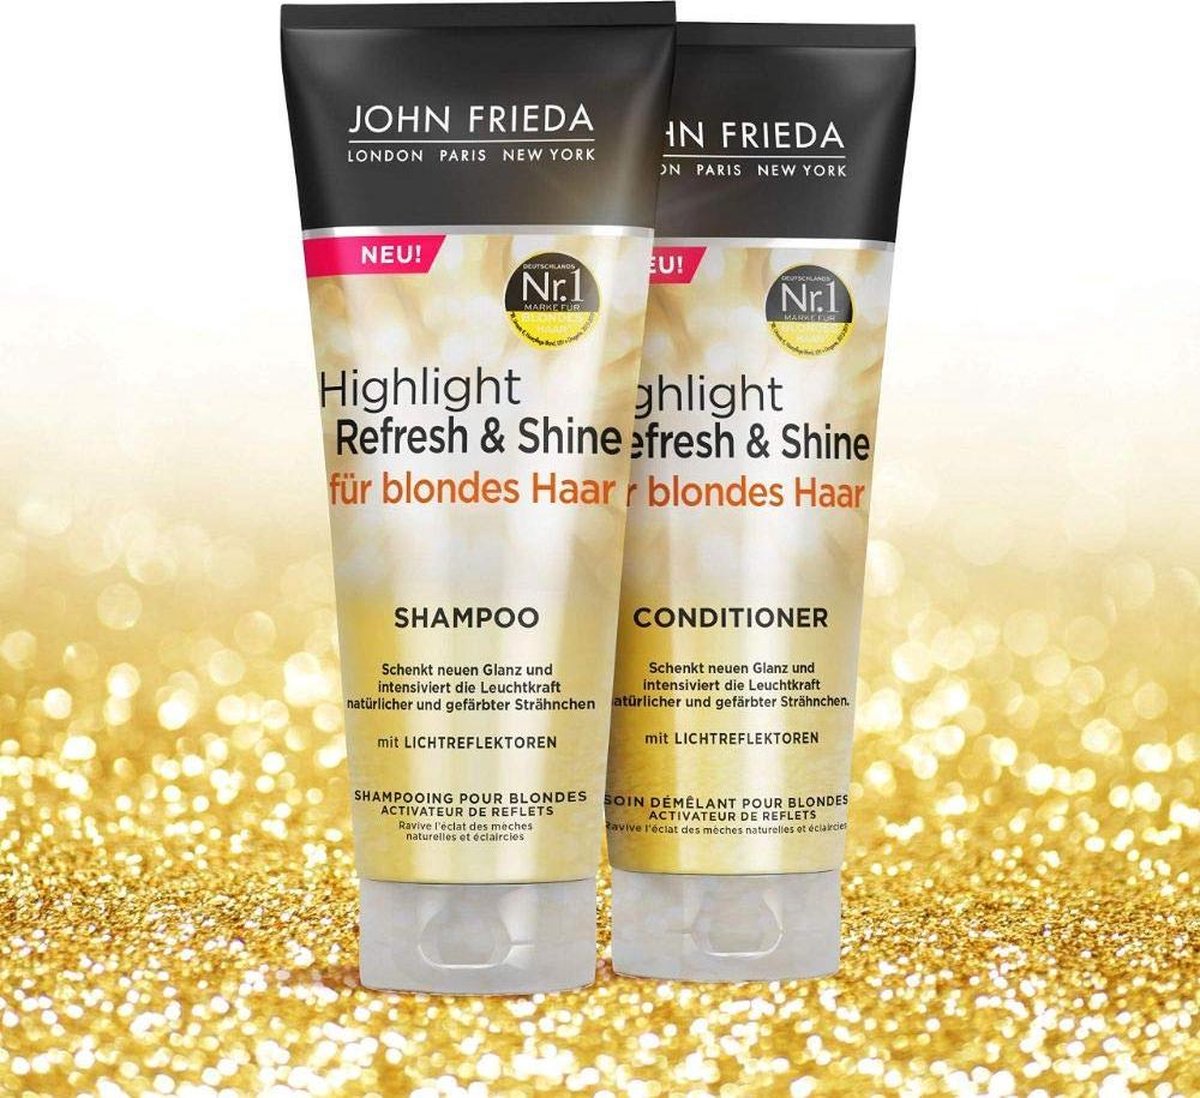 John Frieda Highlight Refresh & Shine - Shampoo voor blond haar - Geeft nieuwe glans en intensifieert de helderheid van highlights, 250 ml